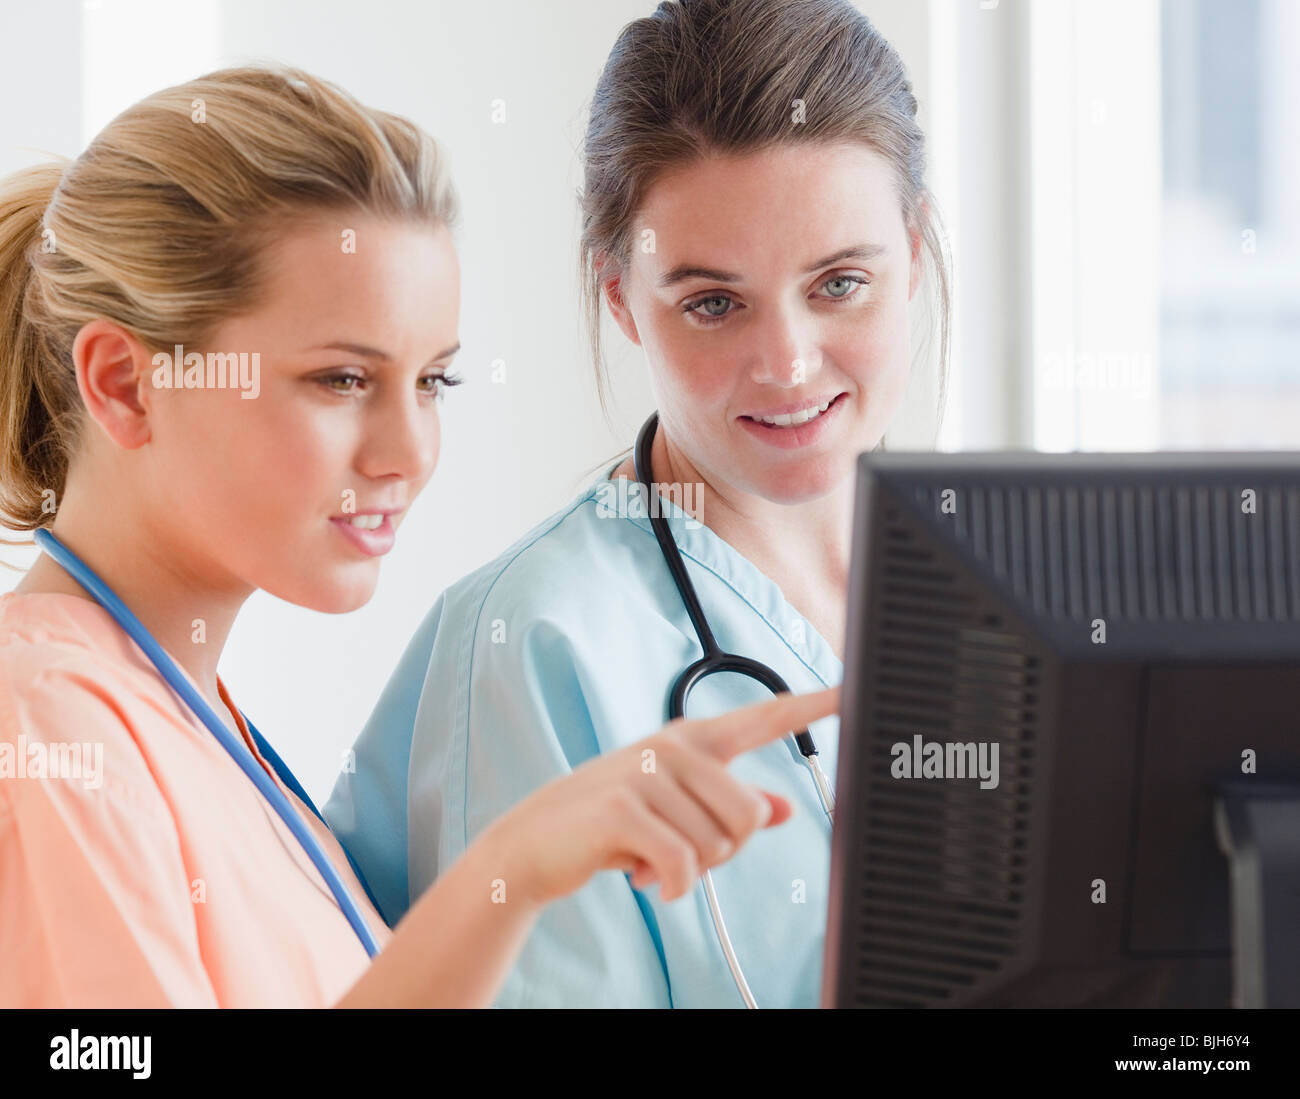 Las enfermeras mirando su equipo Foto de stock